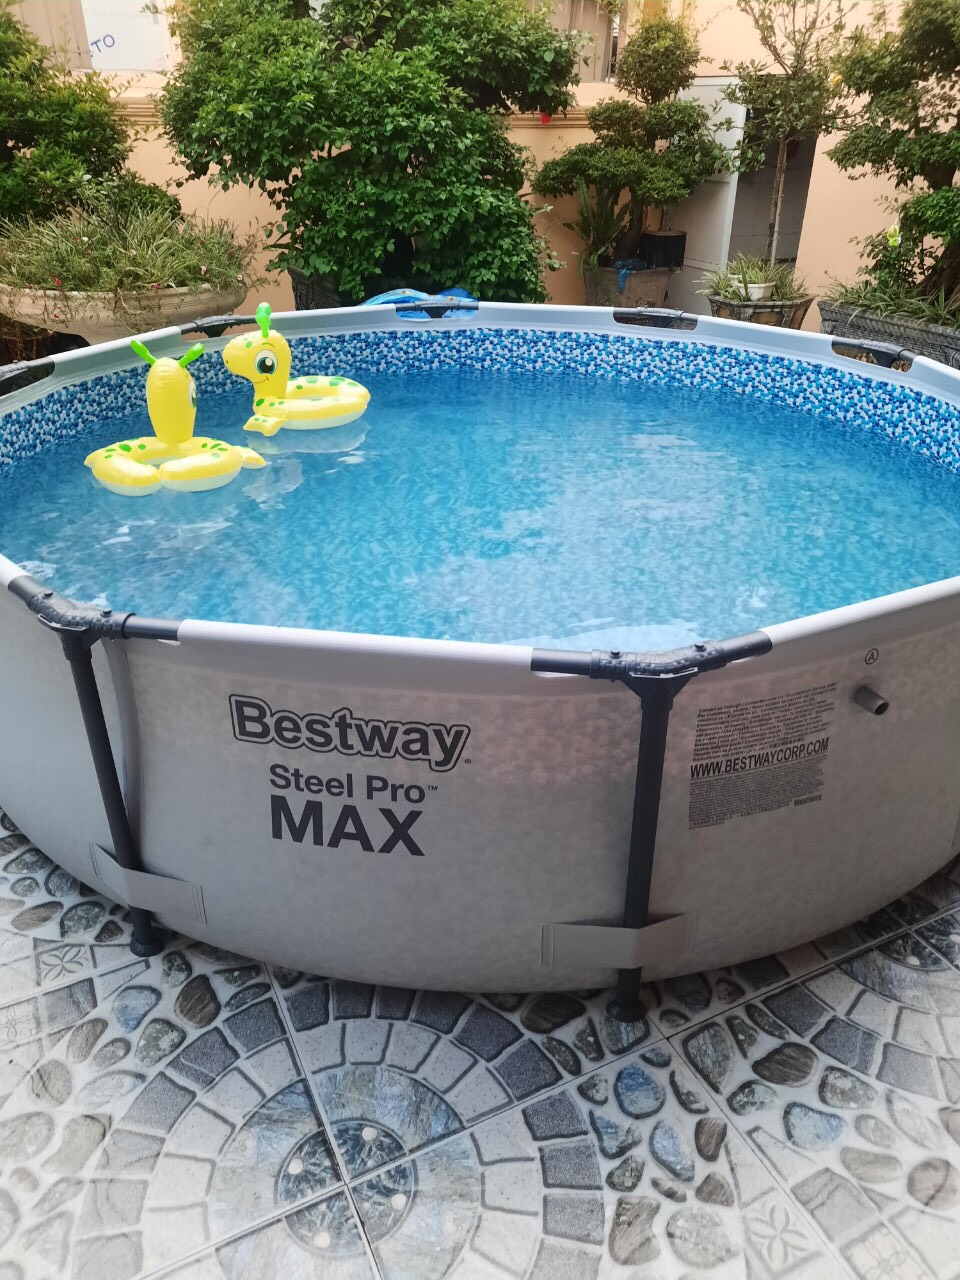 Bể bơi bestway ĐK 3.66 X 0.76m, bể bơi mini lắp ghép lưu động TẶNG bộ lọc công suất 1200l/ h và video hướng dẫn lắp đặt . Khung kim loại và bạt pvc bể được bảo hành 15 tháng. Không có đánh giá